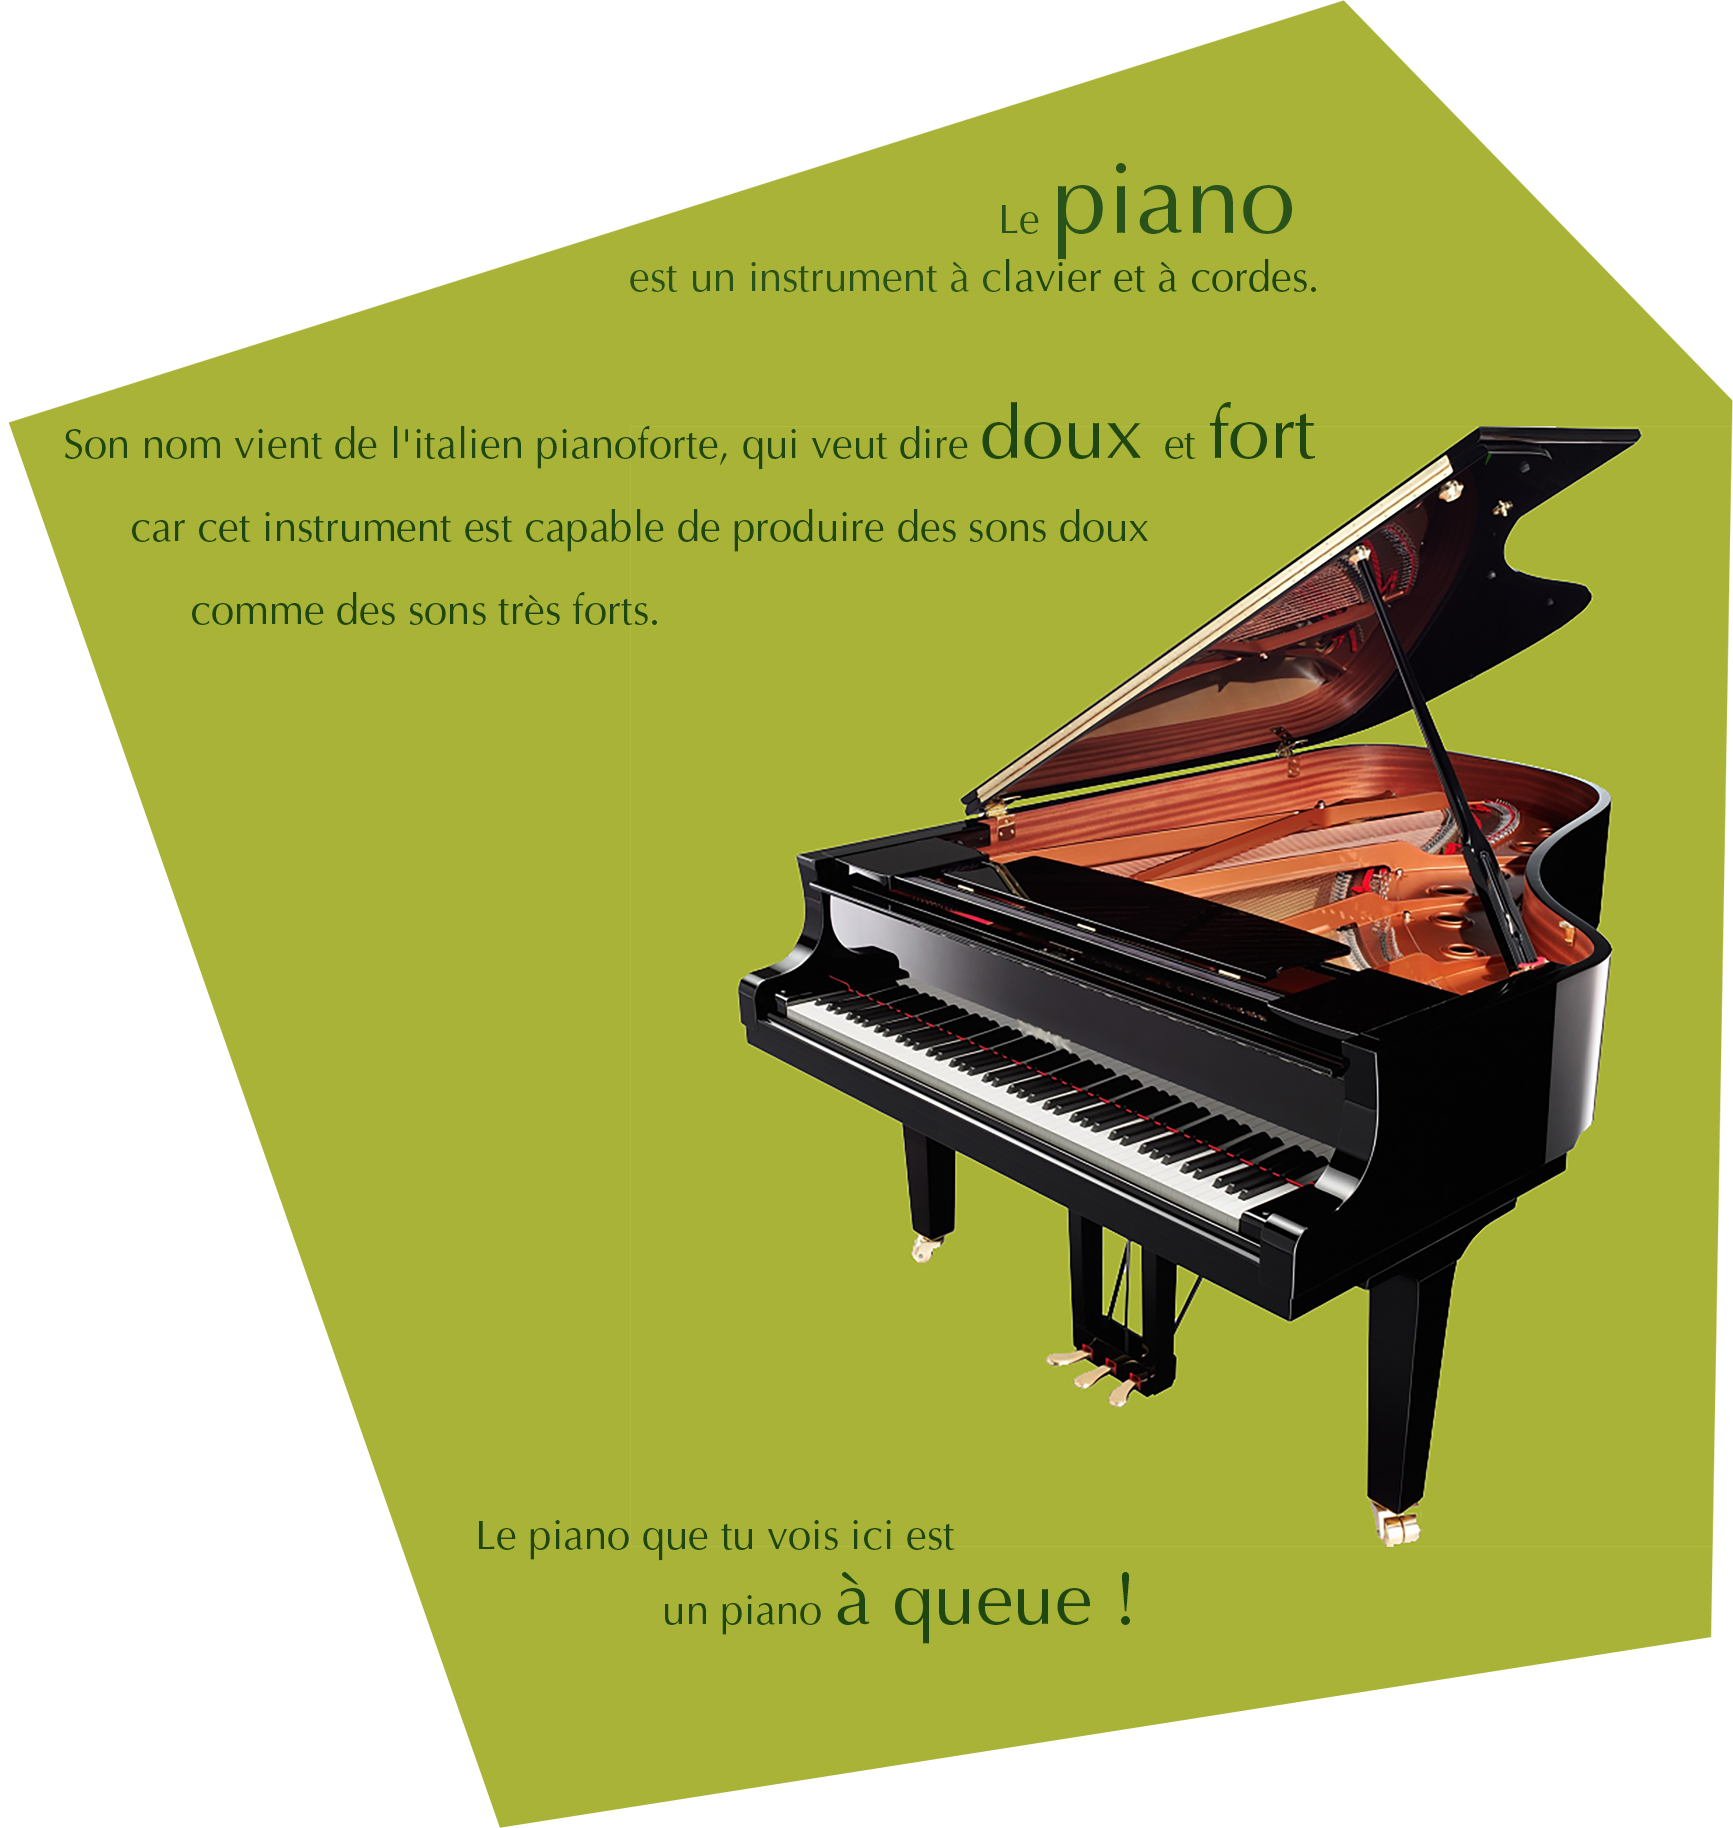 Le piano est un instrument à clavier et à cordes. Son nom vient de l'italien pianoforte, qui veut dire doux et fort, car cet instrument est capable de produire des sons doux comme des sons très forts. Le piano que tu vois ici est un piano à queue !